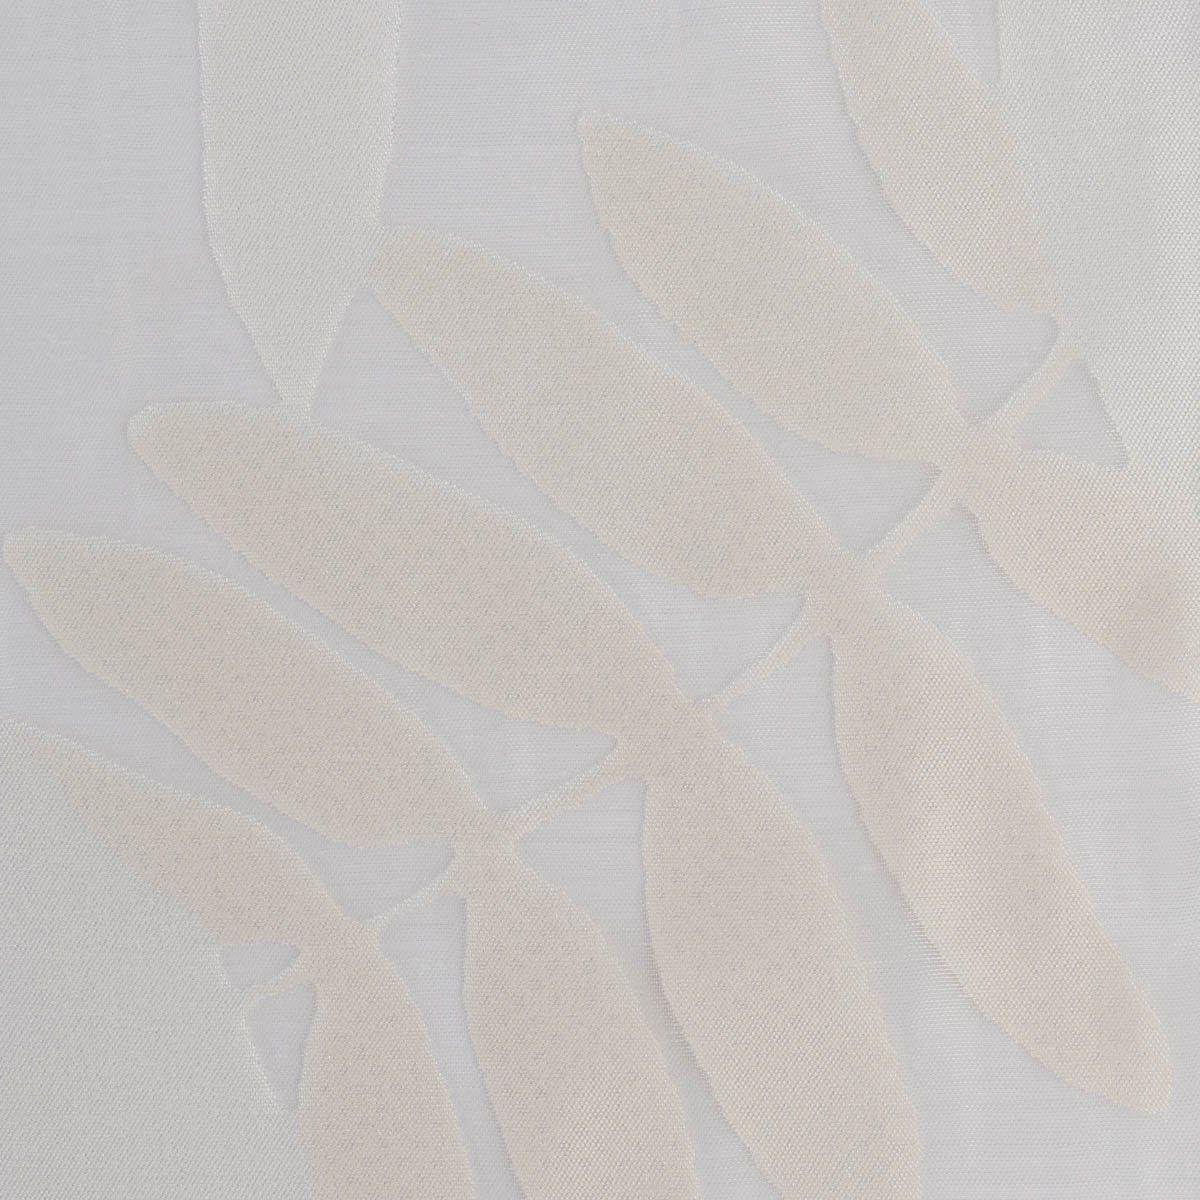 Textil Bleiband, überbreit 295cm, Madagaskar mit leicht perforiert, Rasch Gardinenstoff Meterware Organza, weiß Blätter Ausbrenner